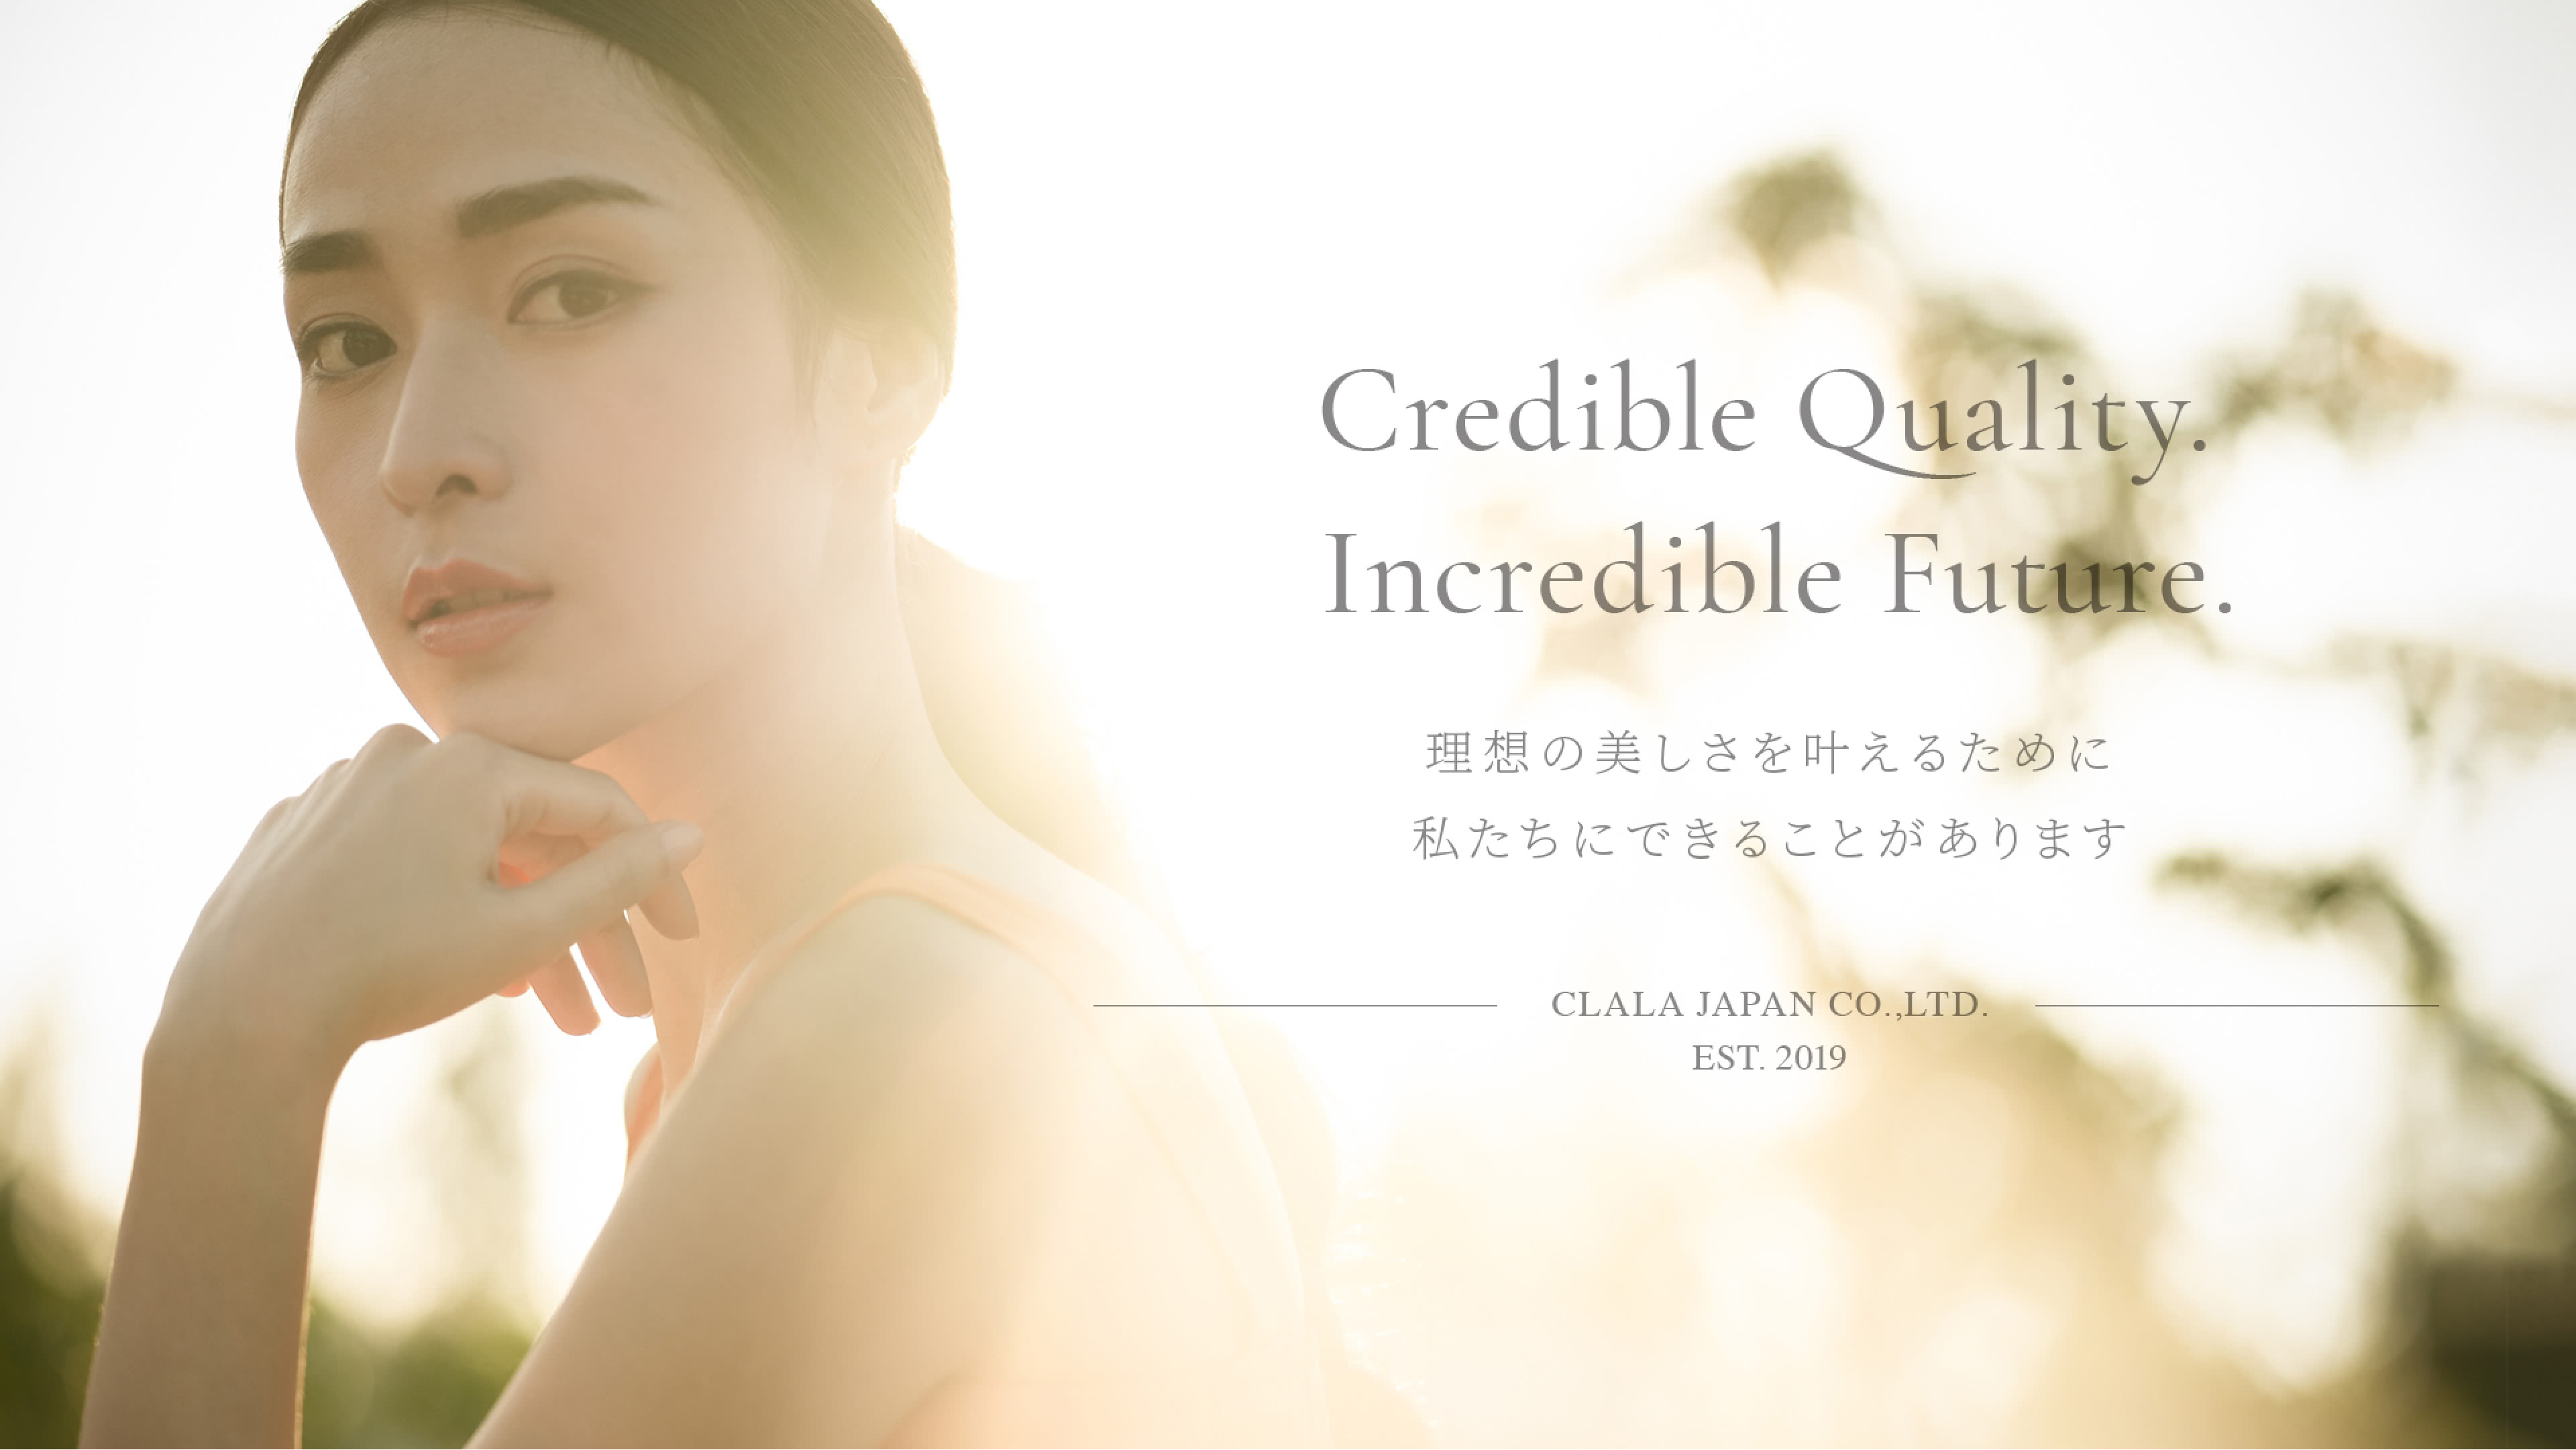 Credible Quality. Incredible Future. 理想の美しさを叶えるために私たちにできることがあります CLALA JAPAN CO.,LTD. EST.2019